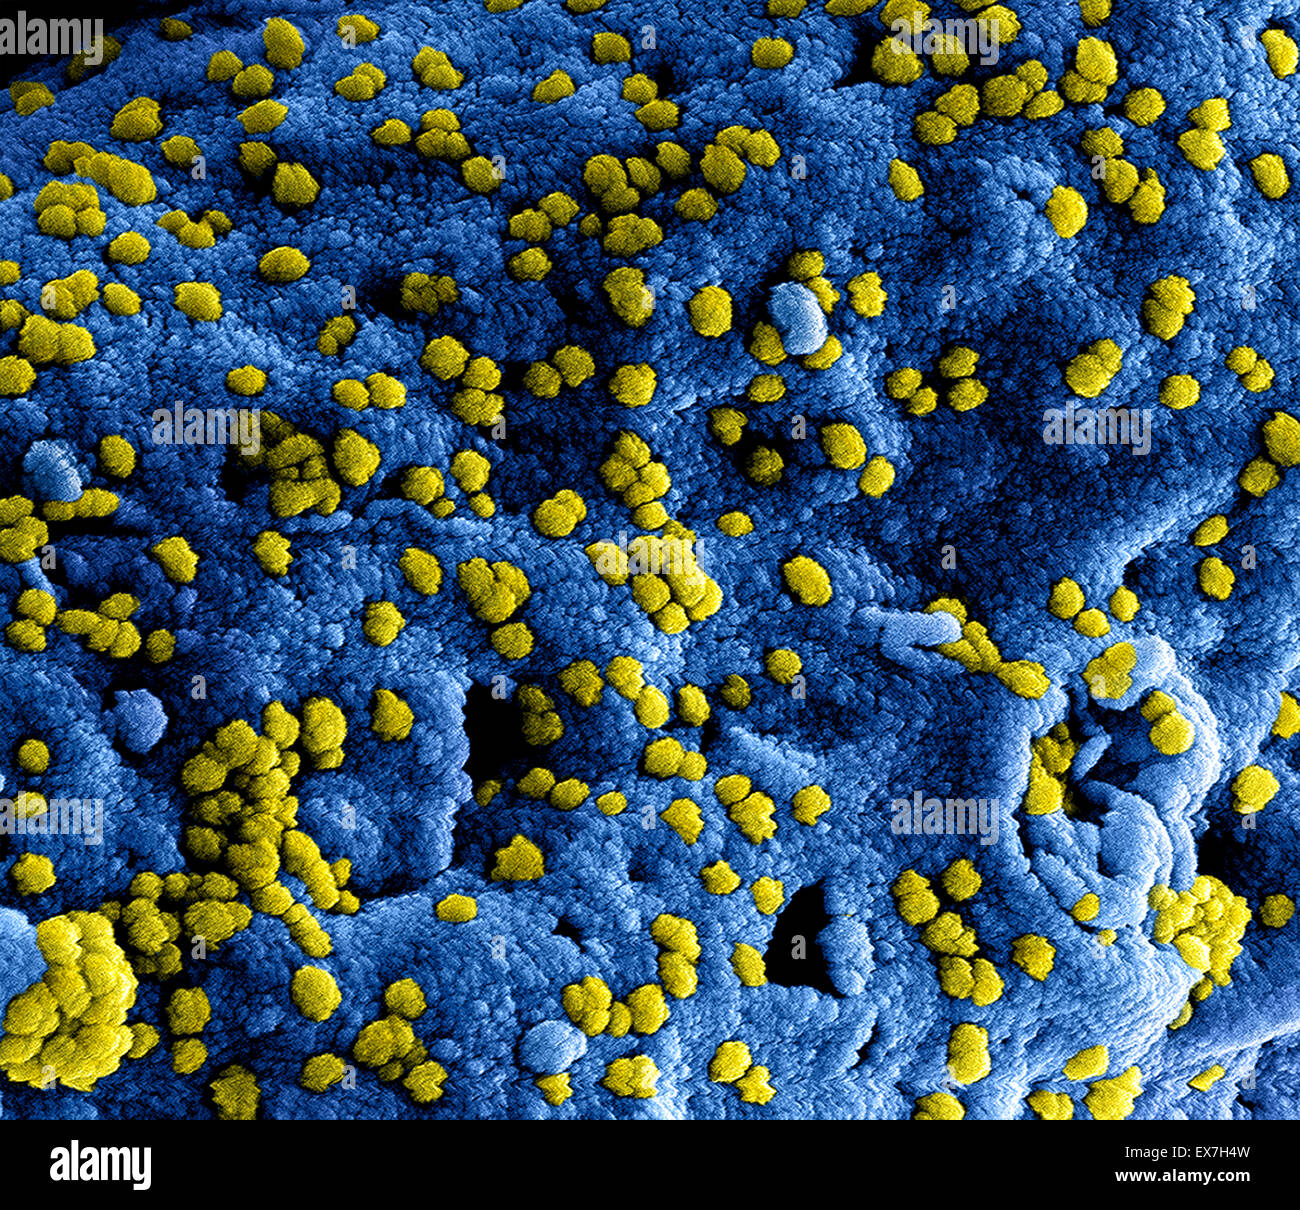 L'analyse des électrons Microphotographie colorisée montrant Moyen-orient syndrome respiratoire Coronavirus (MERS-CoV) les particules virales. Banque D'Images